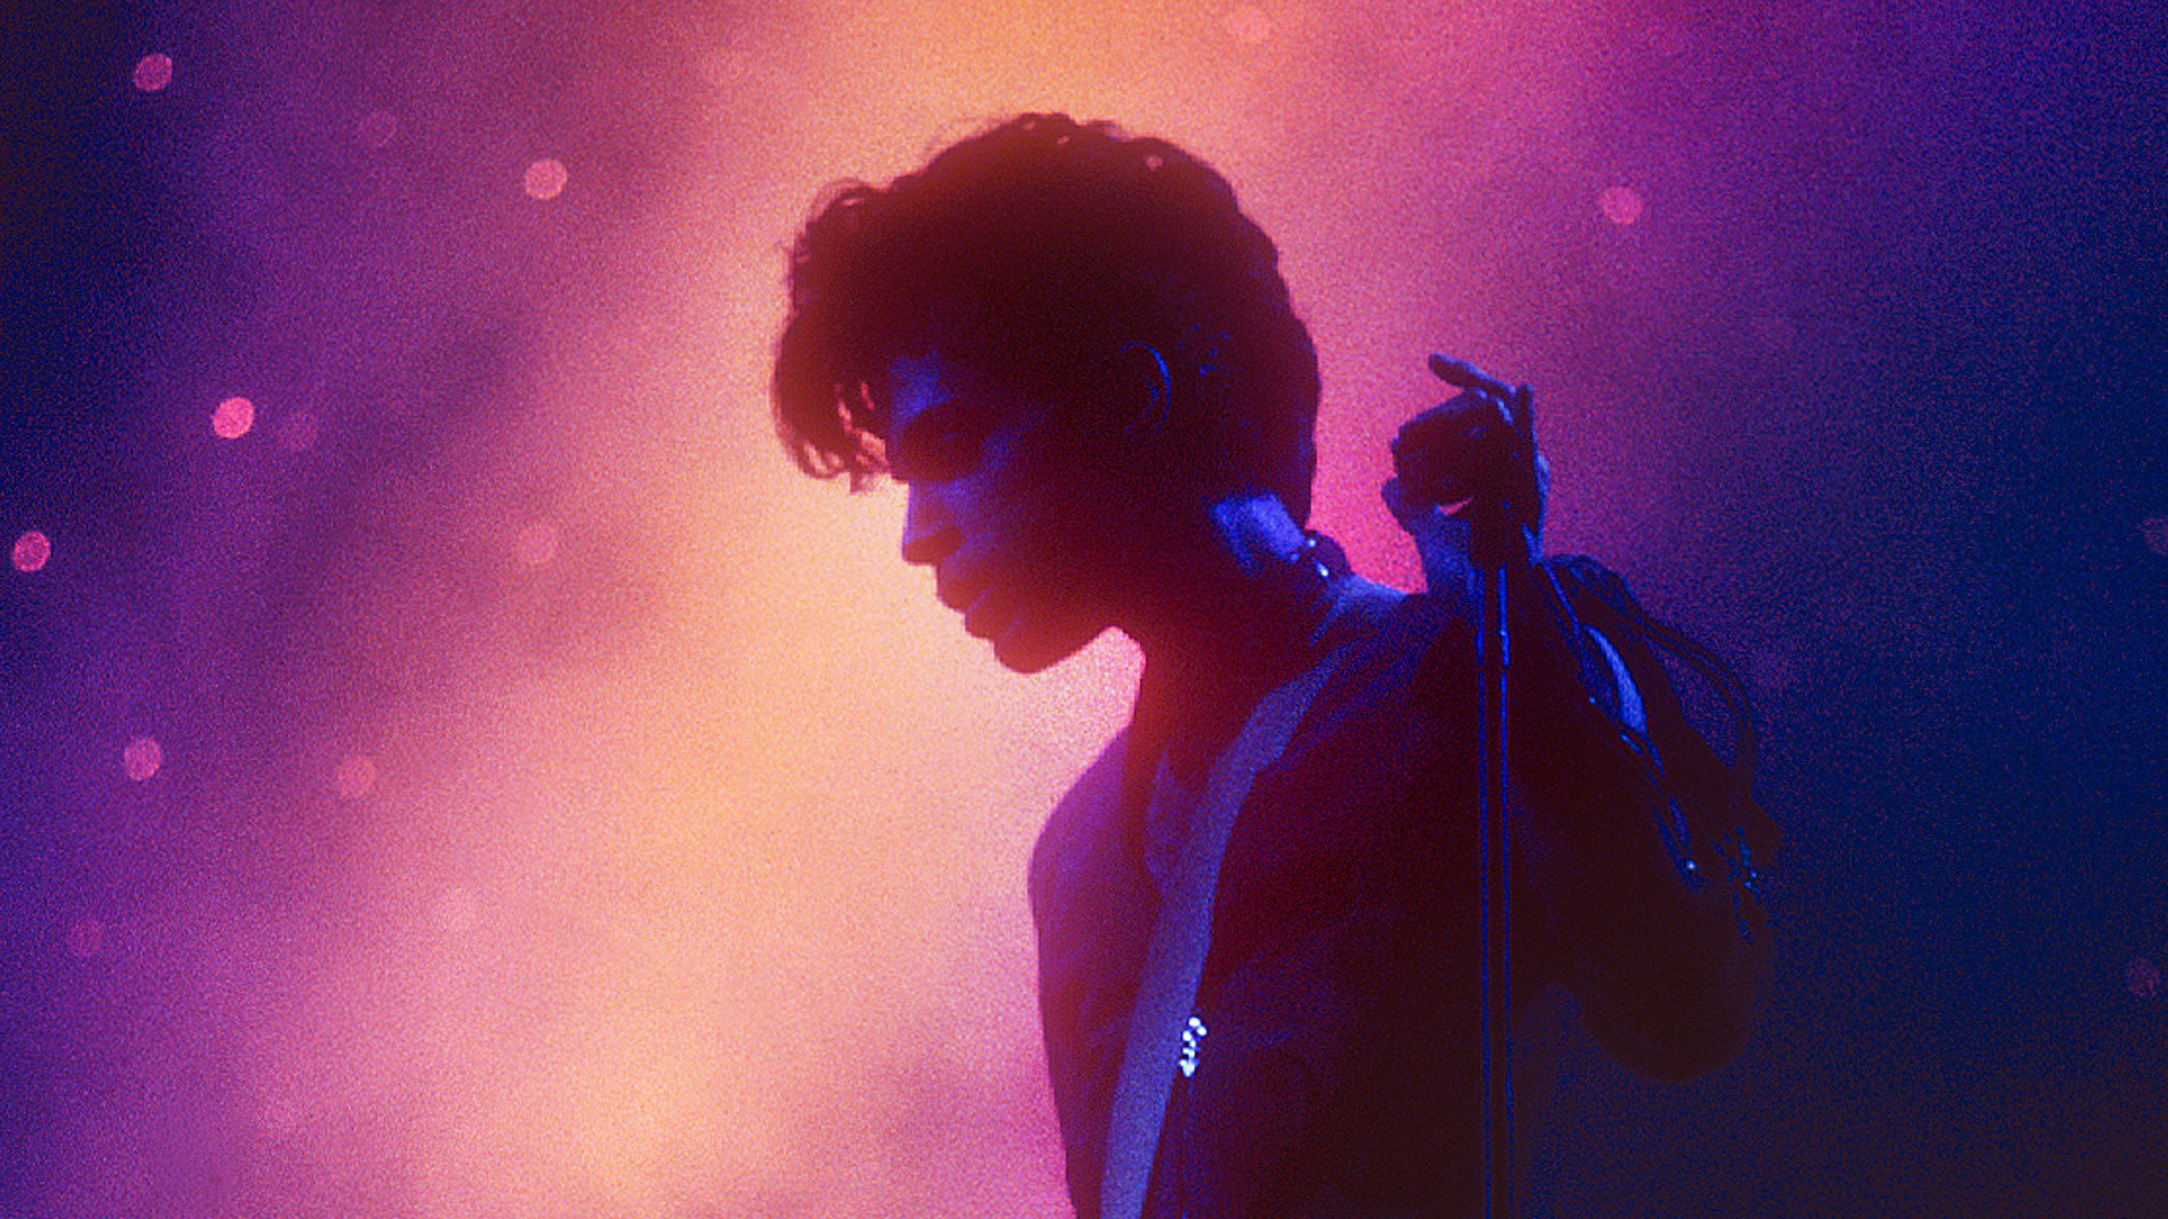 Fotograaf Rob Verhorst brengt fotoboek uit van Prince: 'Hij was een sensatie'